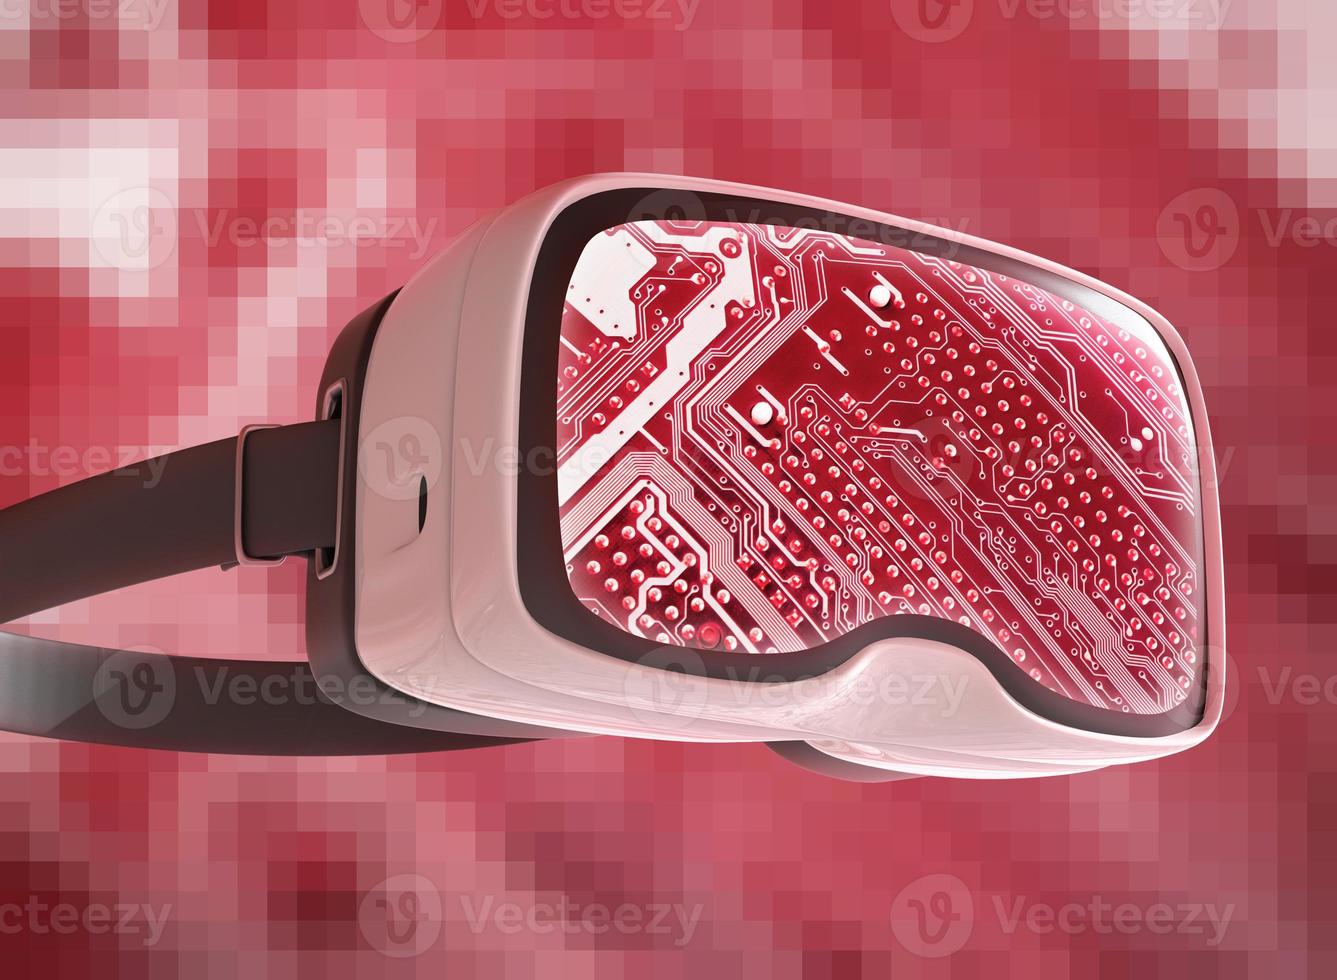 virtuell verklighetsglasögon, futuristisk hacker, internetteknik och nätverkskoncept foto